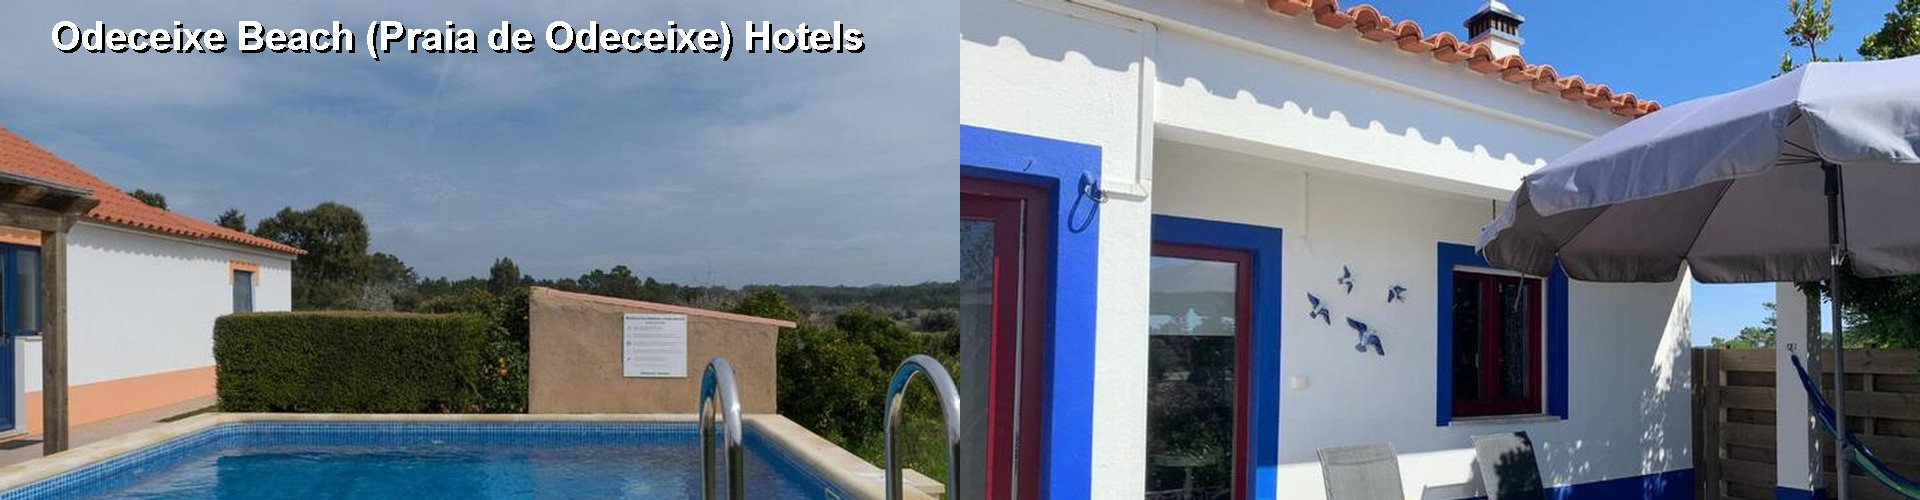 5 Best Hotels near Odeceixe Beach (Praia de Odeceixe)